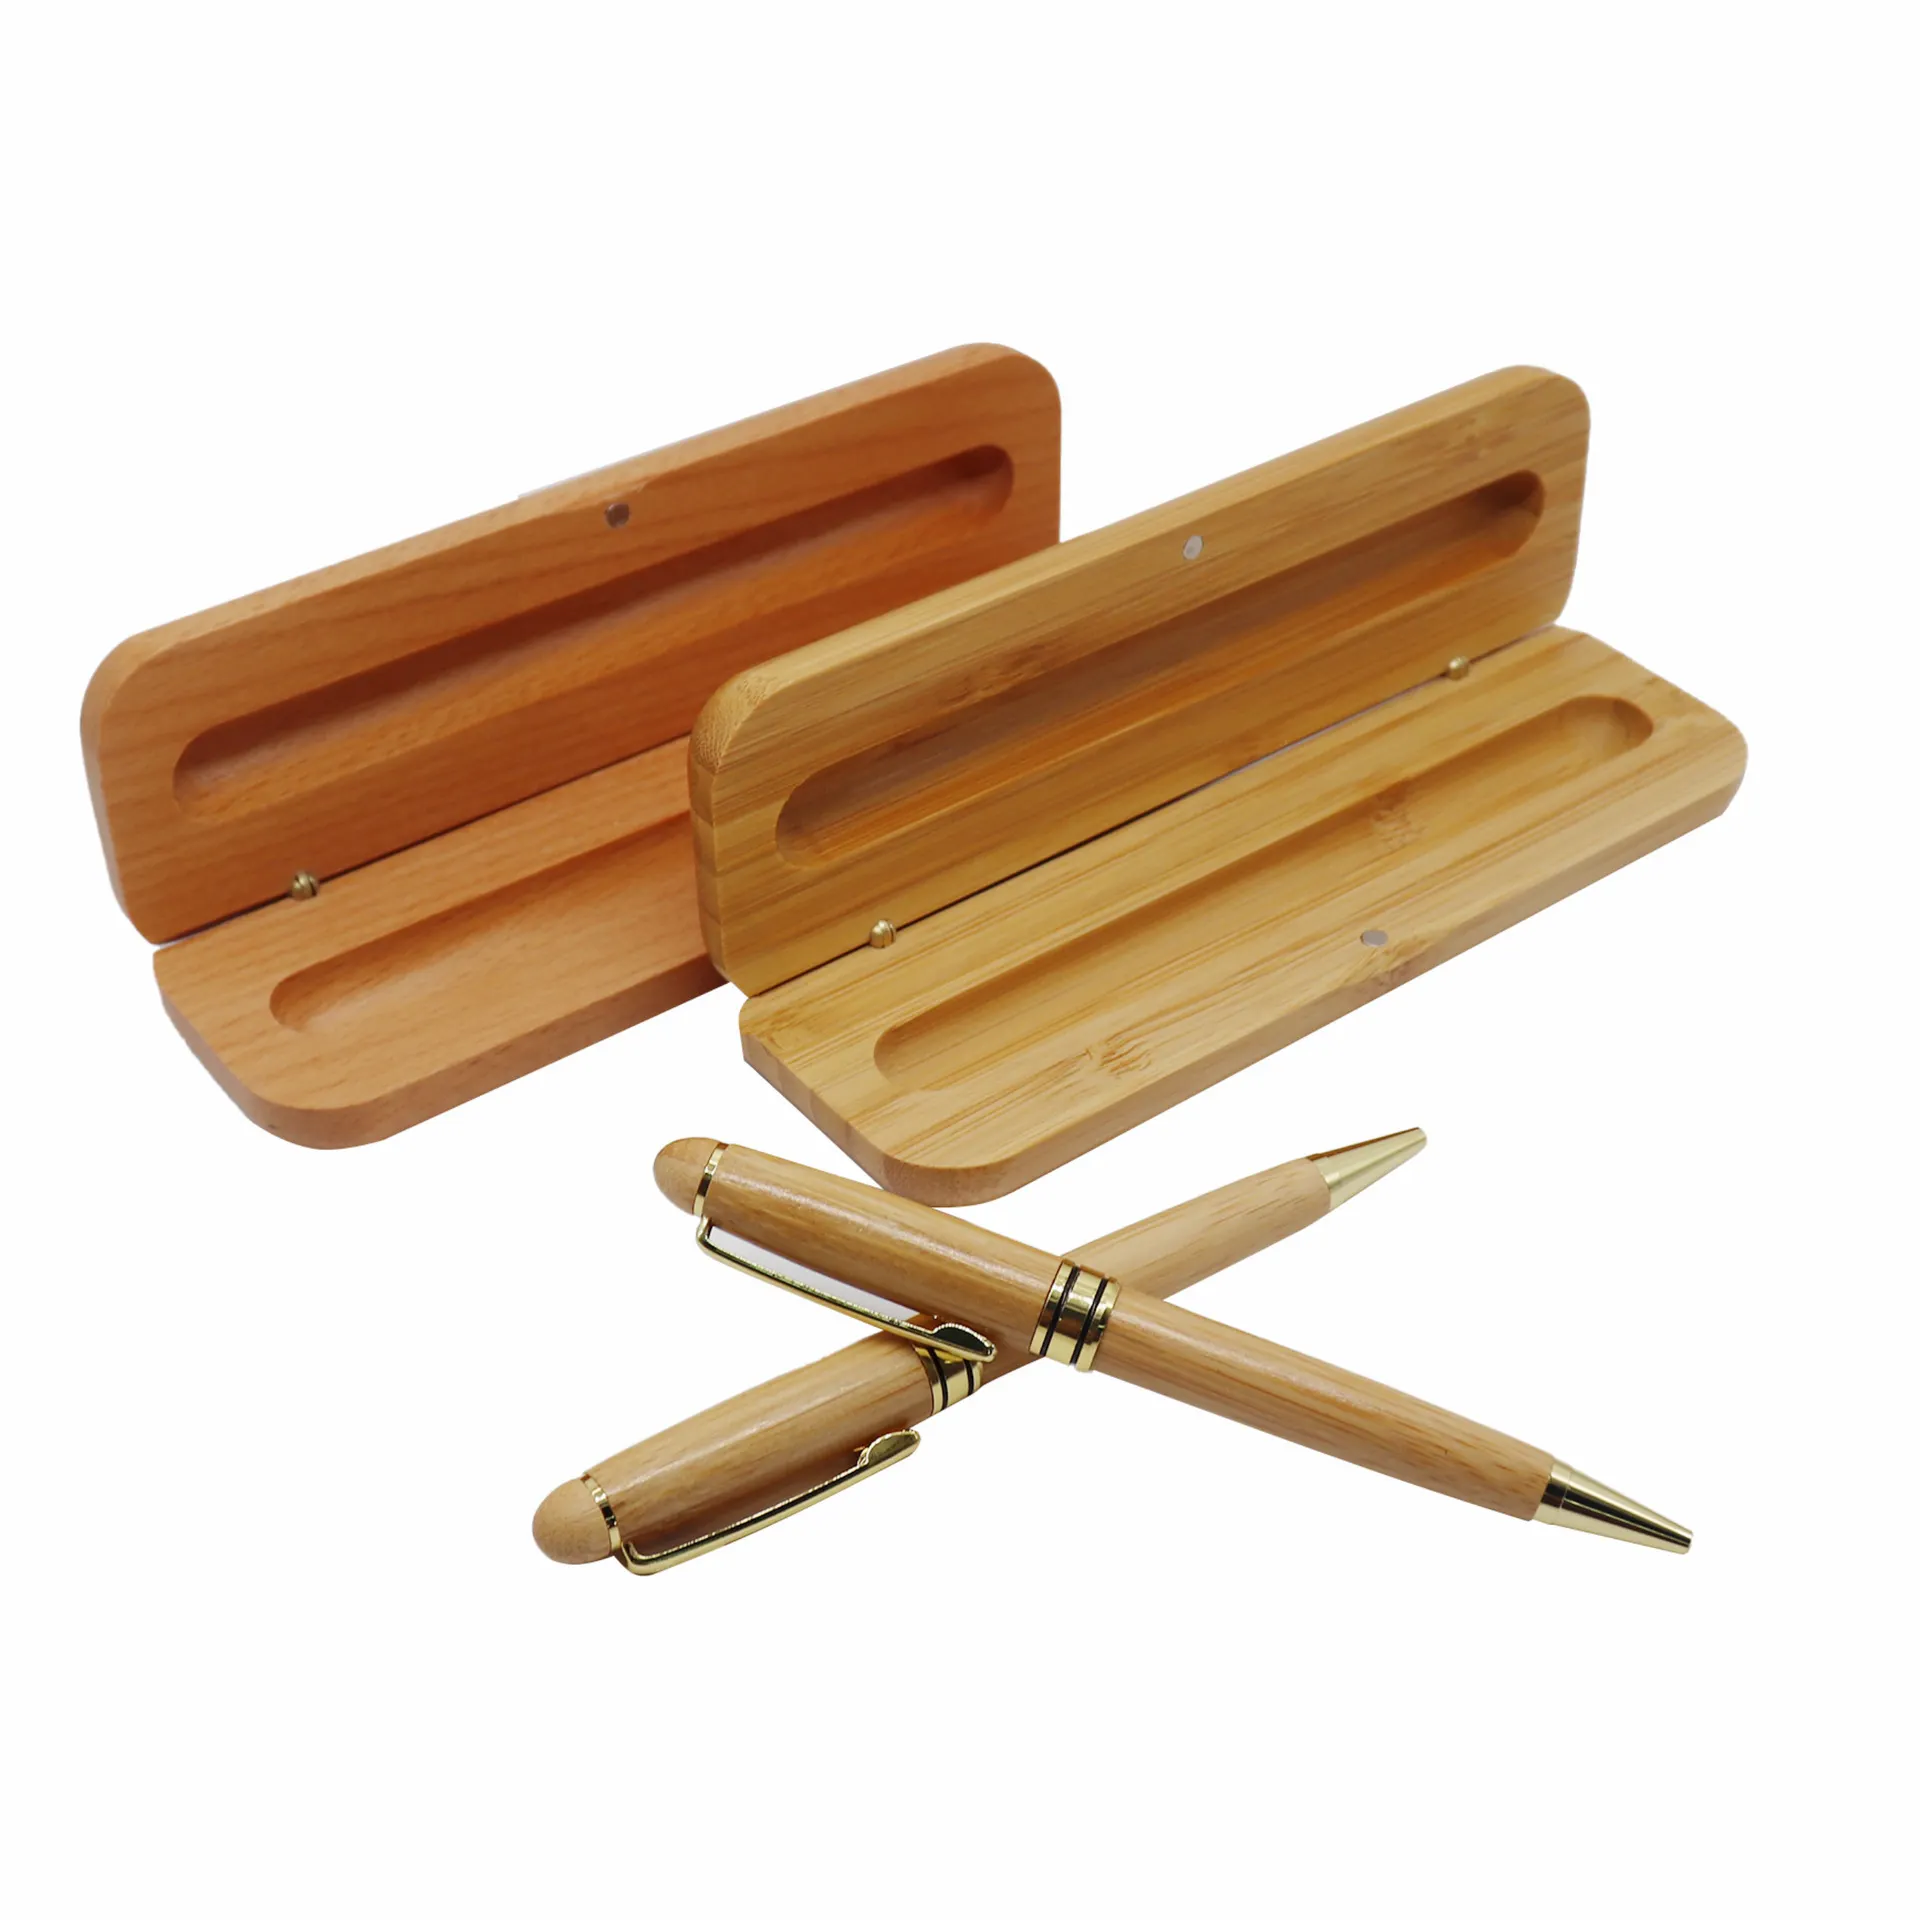 Kırtasiye ve ofis aksesuarları taşınabilir özel logo hediye kalem seti promosyon bambu ahşap kalem kutusu